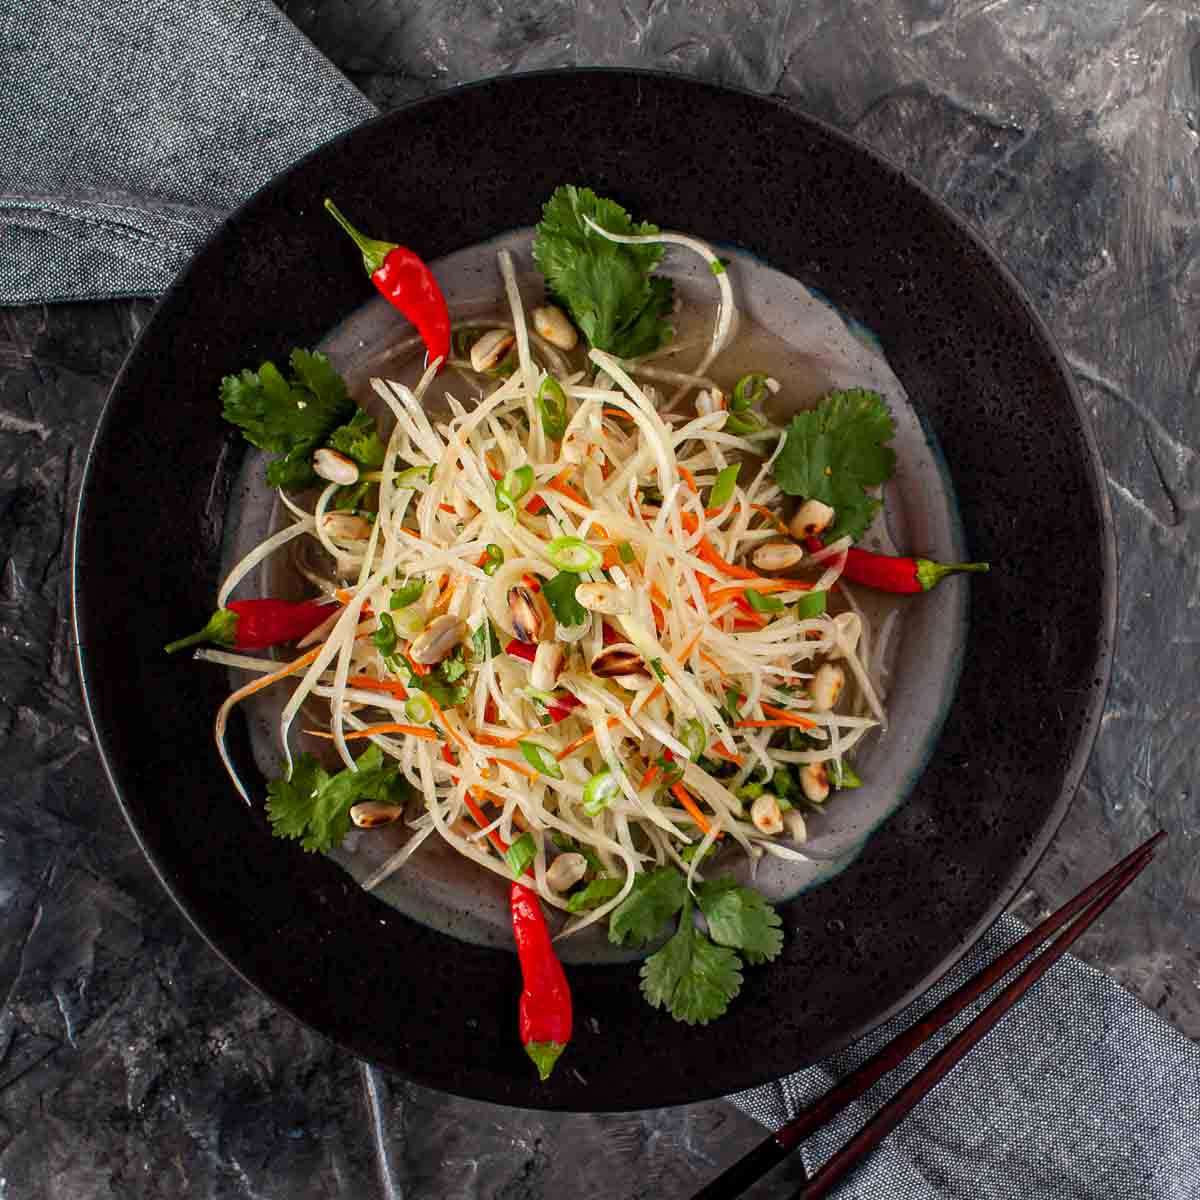 https://cdn.saltandpestle.com/saltandpestlecdncontainer/wp-content/uploads/2021/05/vietnamese-green-papaya-salad-10.jpg